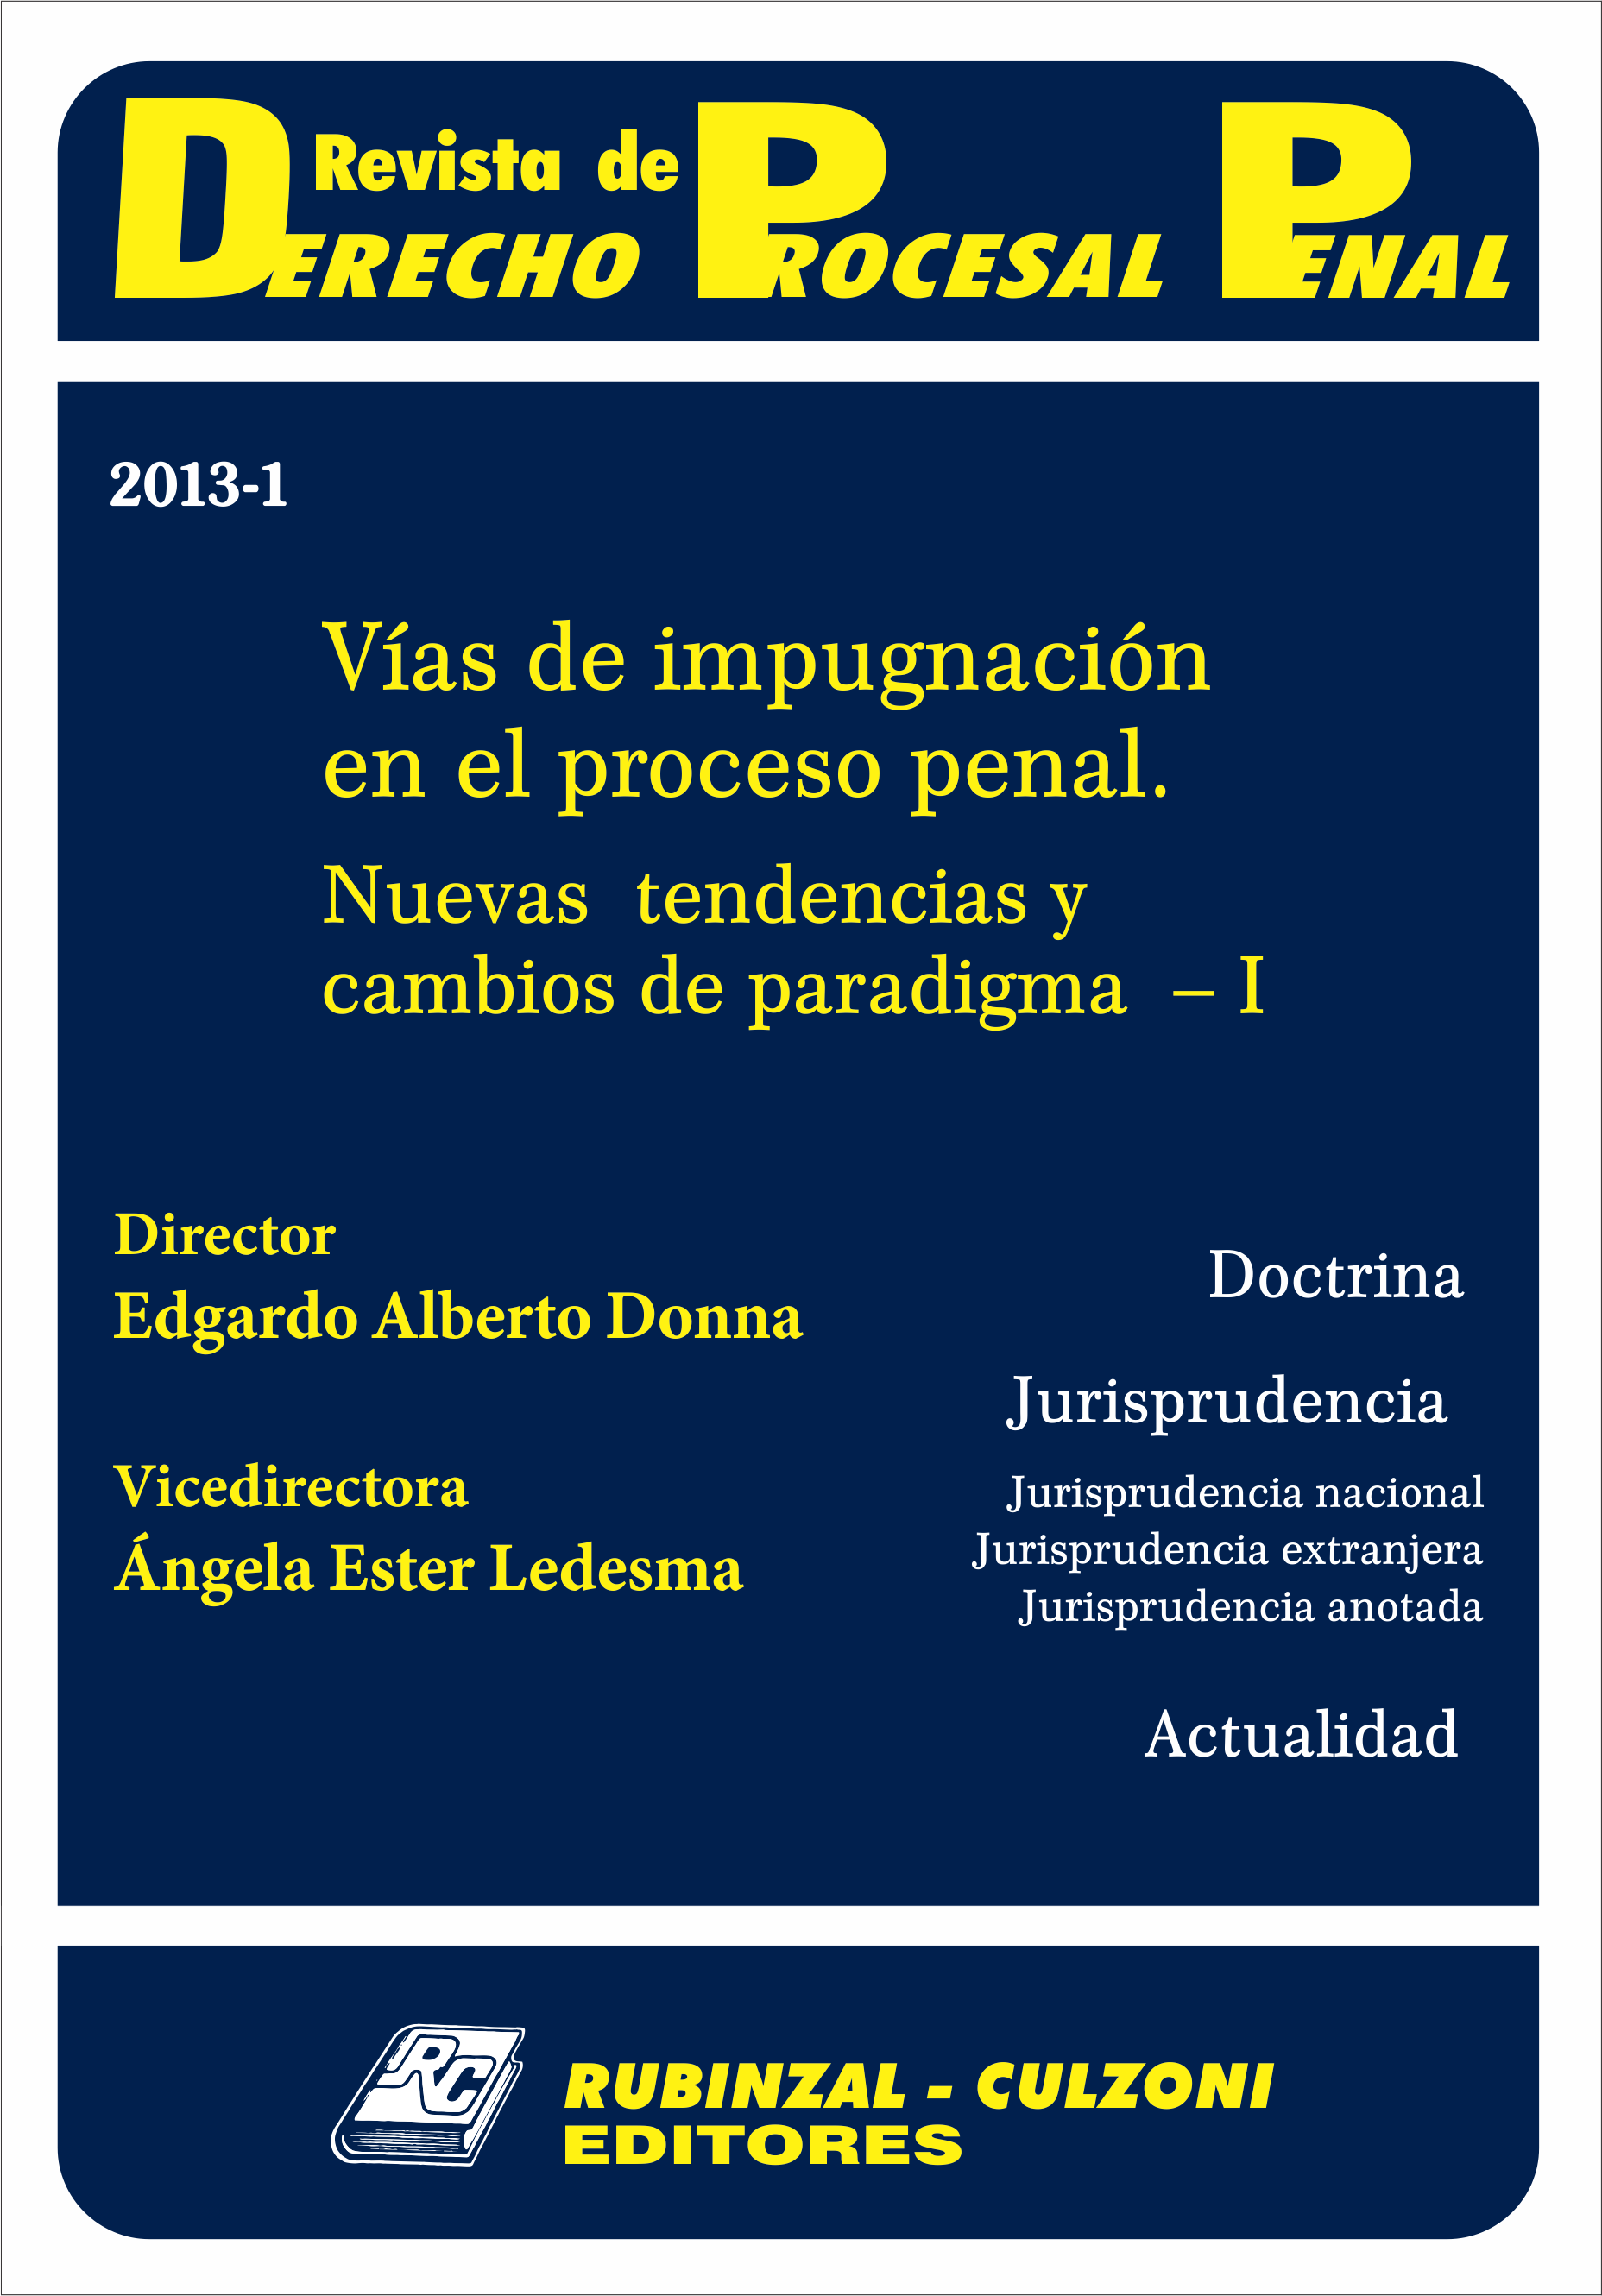 Revista de Derecho Procesal Penal - Vías de impugnación en el proceso penal